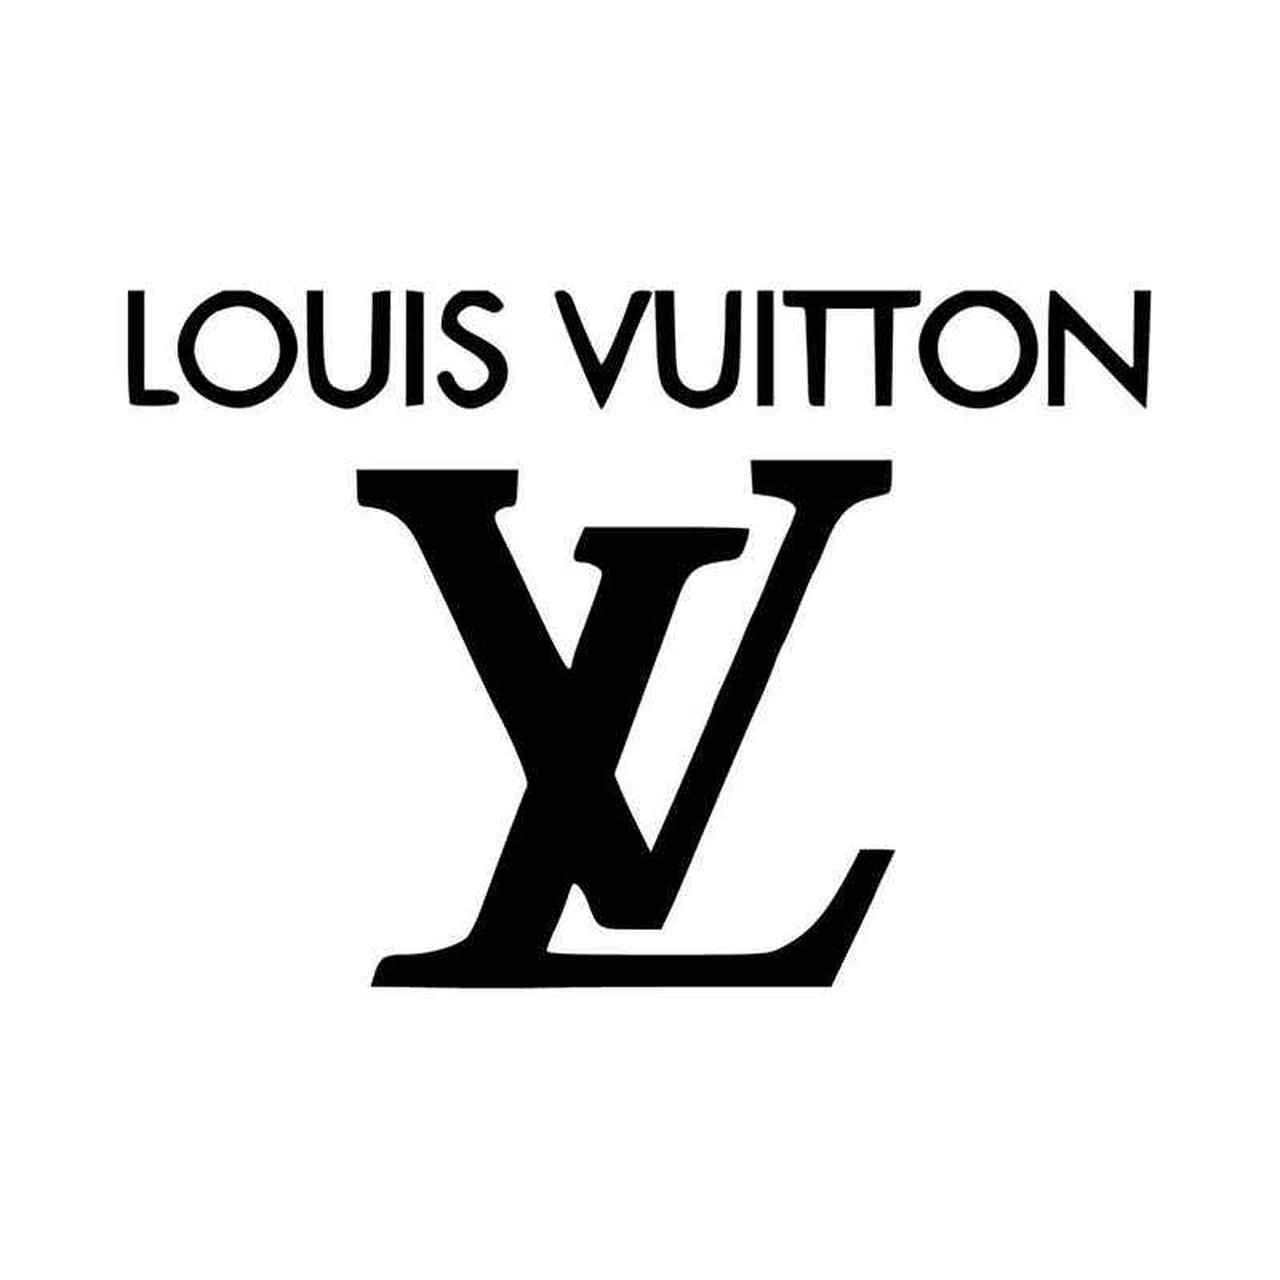 K-pop group LE SSERAFIM is Louis Vuitton's newest brand ambassador